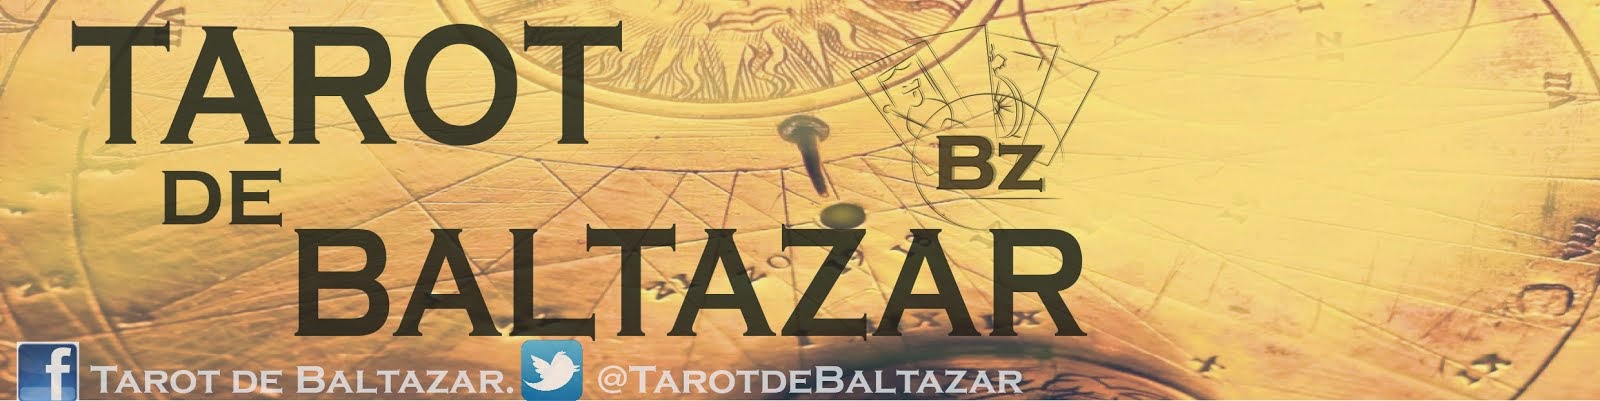 Tarot de Baltazar